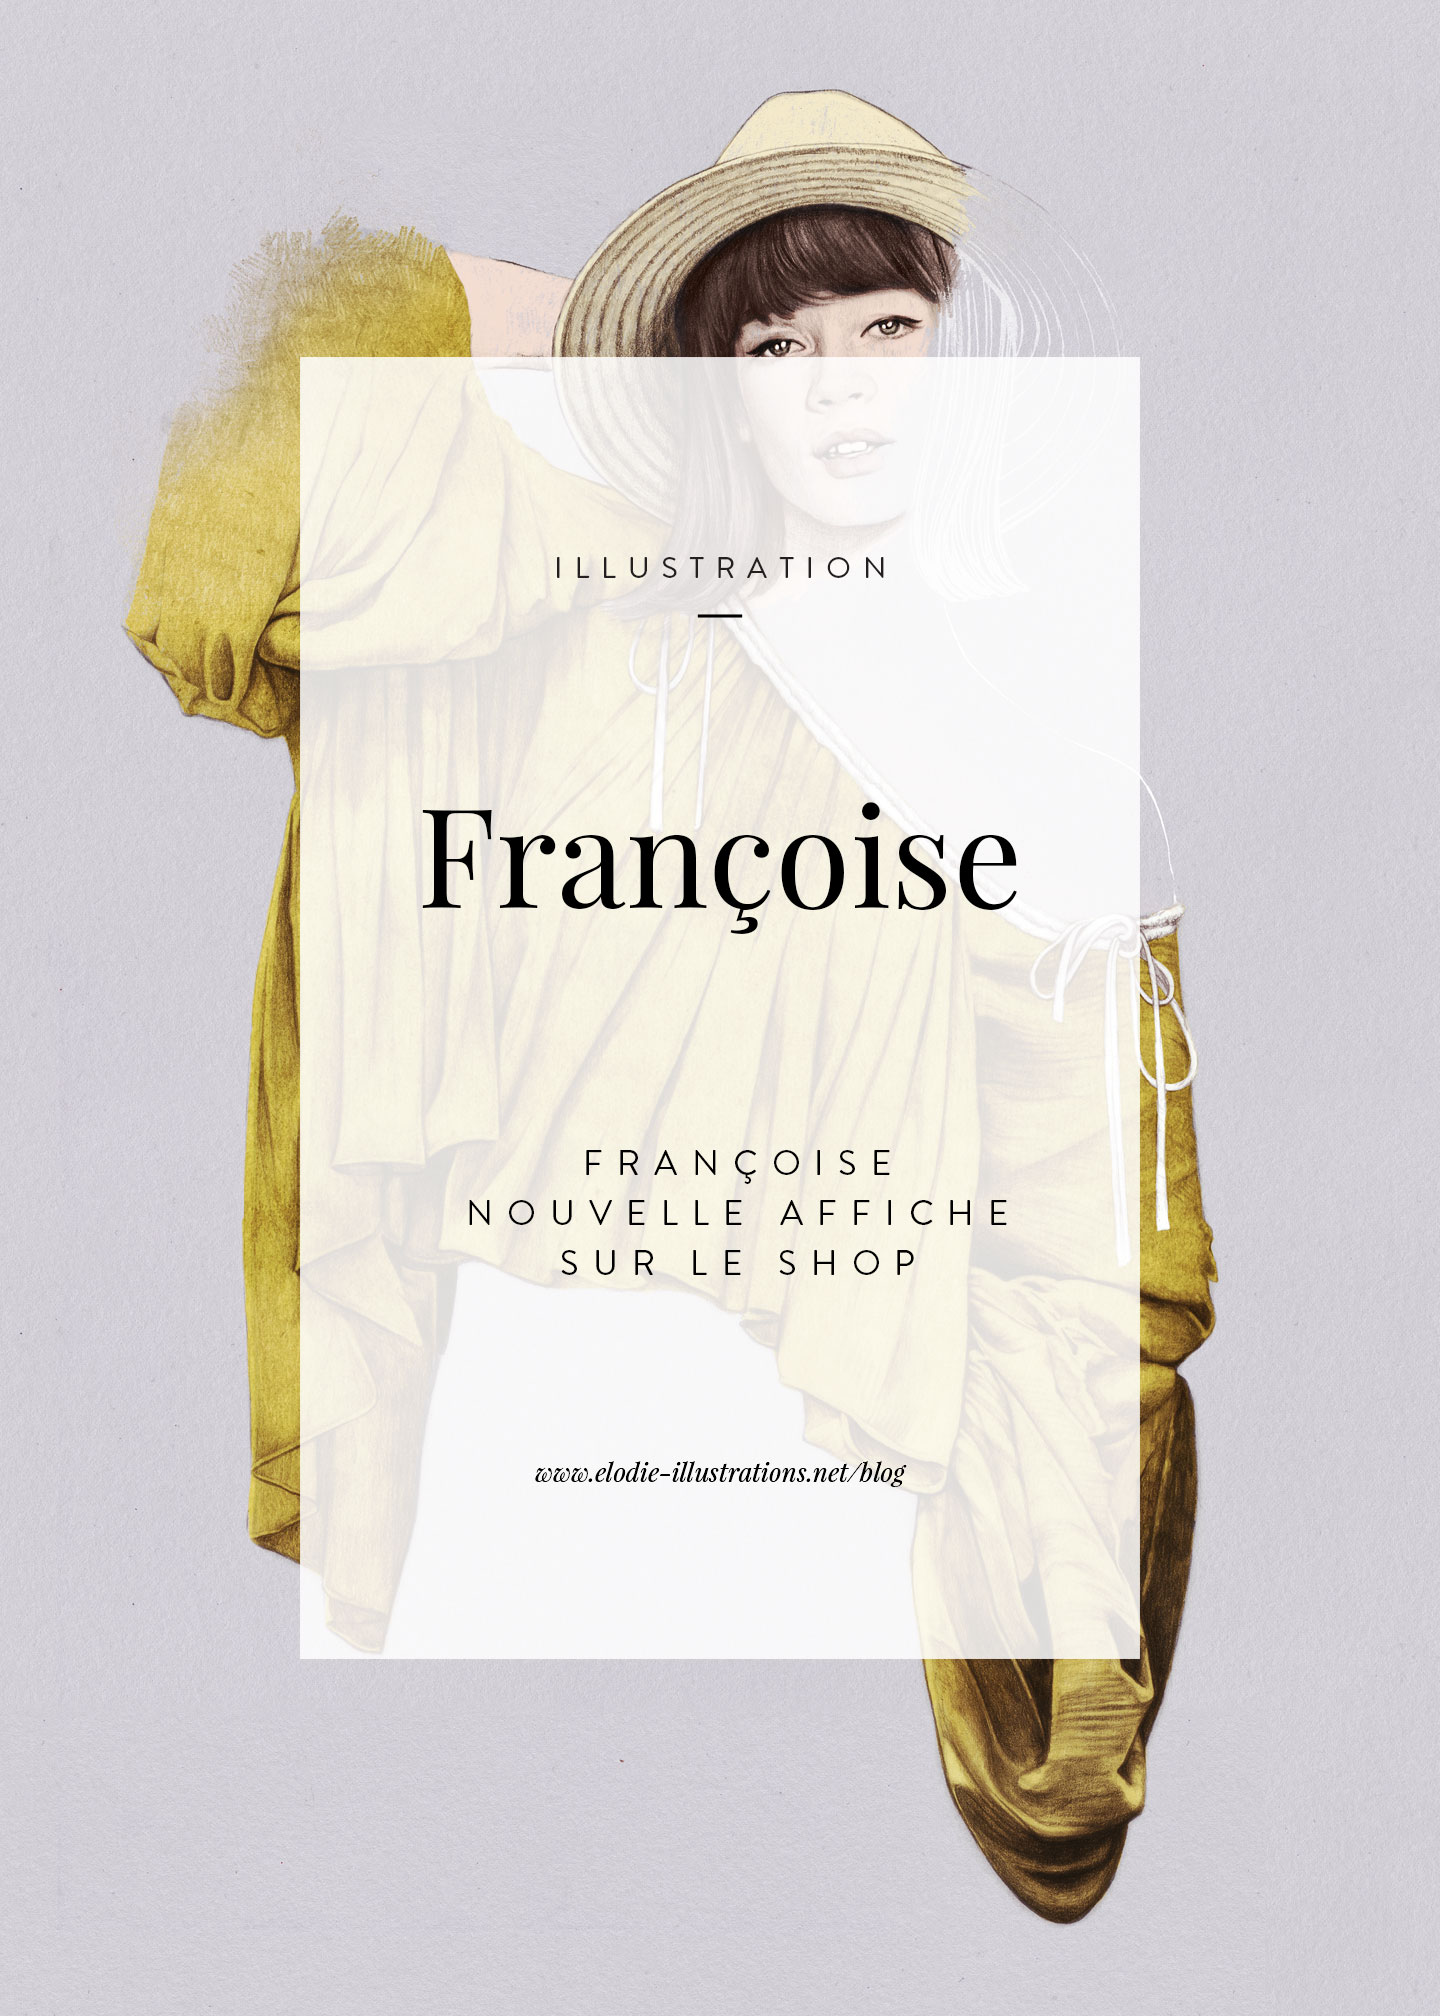 Françoise| Nouvelle affiche inspirée de Françoise Hardy disponible sur le shop. - Cliquez pour découvrir l'article